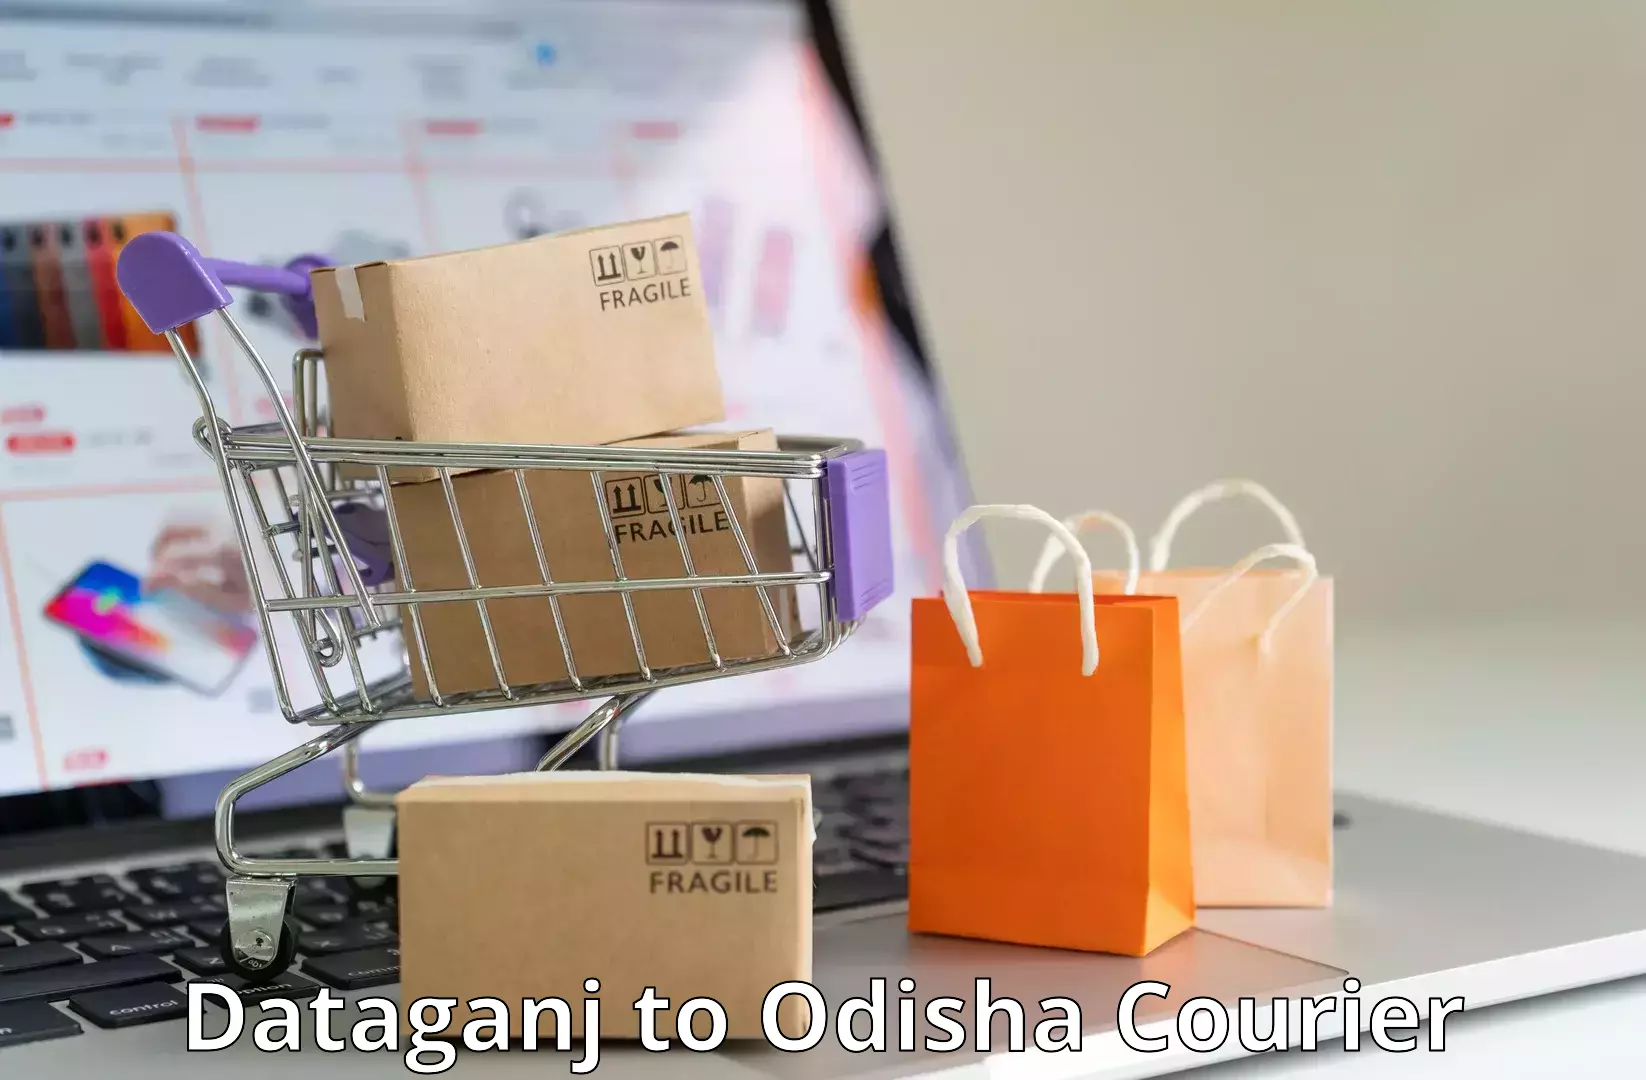 Sustainable shipping practices Dataganj to Odisha